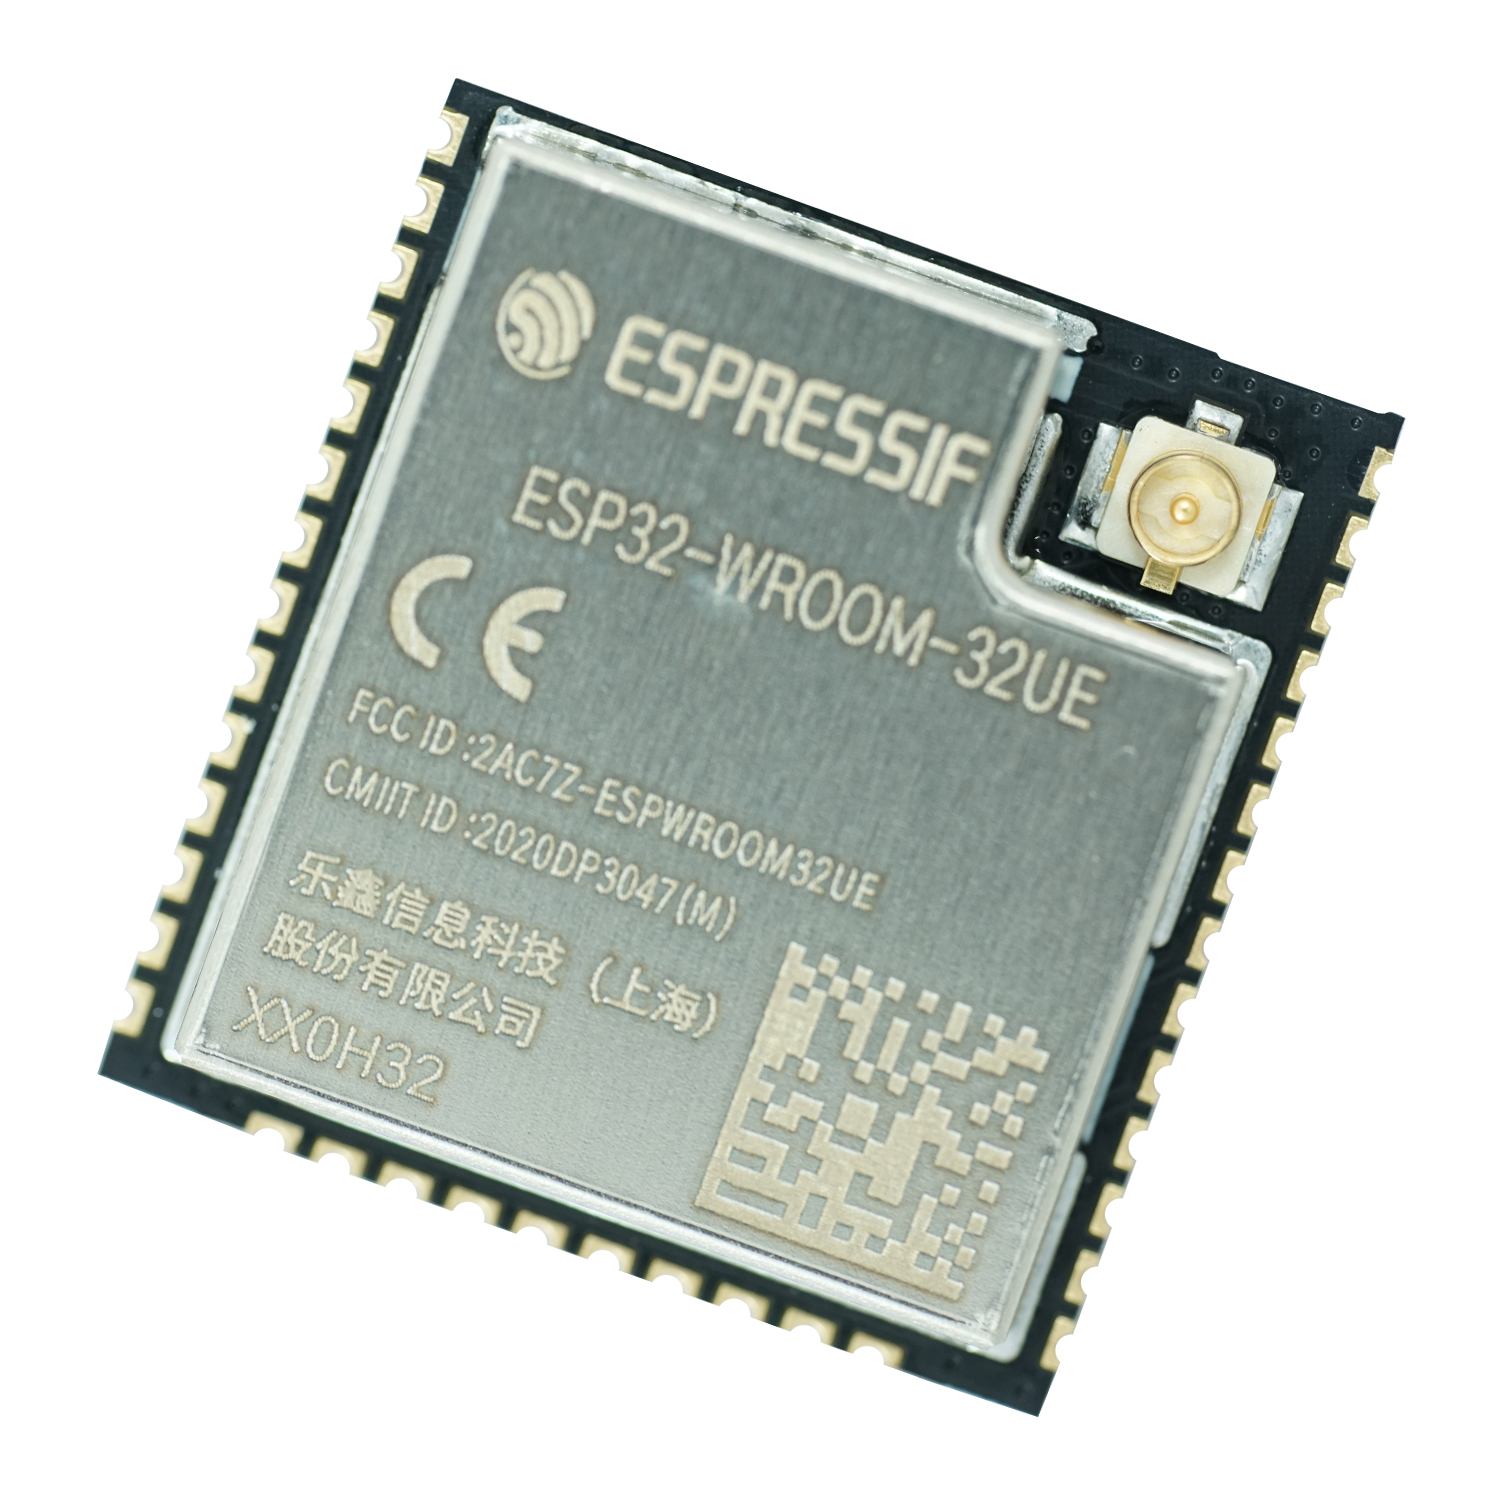 ESP32-WROOM-32UE - WI-FI/BT/BLE Module - Espressif Systems - 4MB Flash, –  Grid Connect